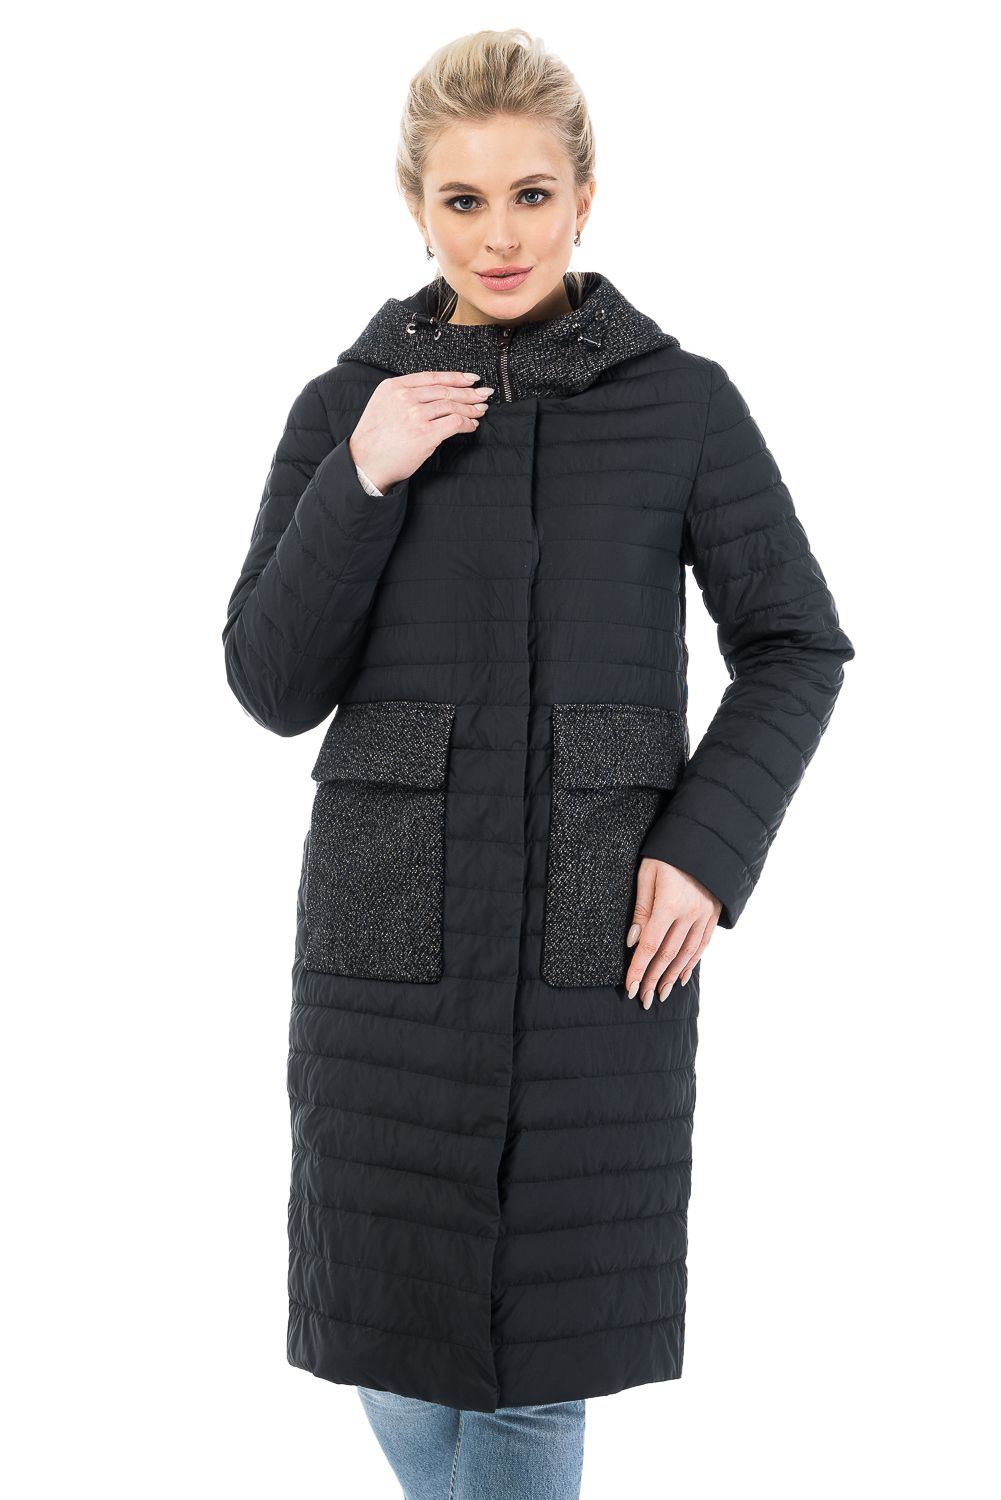 Пальто женское OHARA CC-20701 черное 52 RU